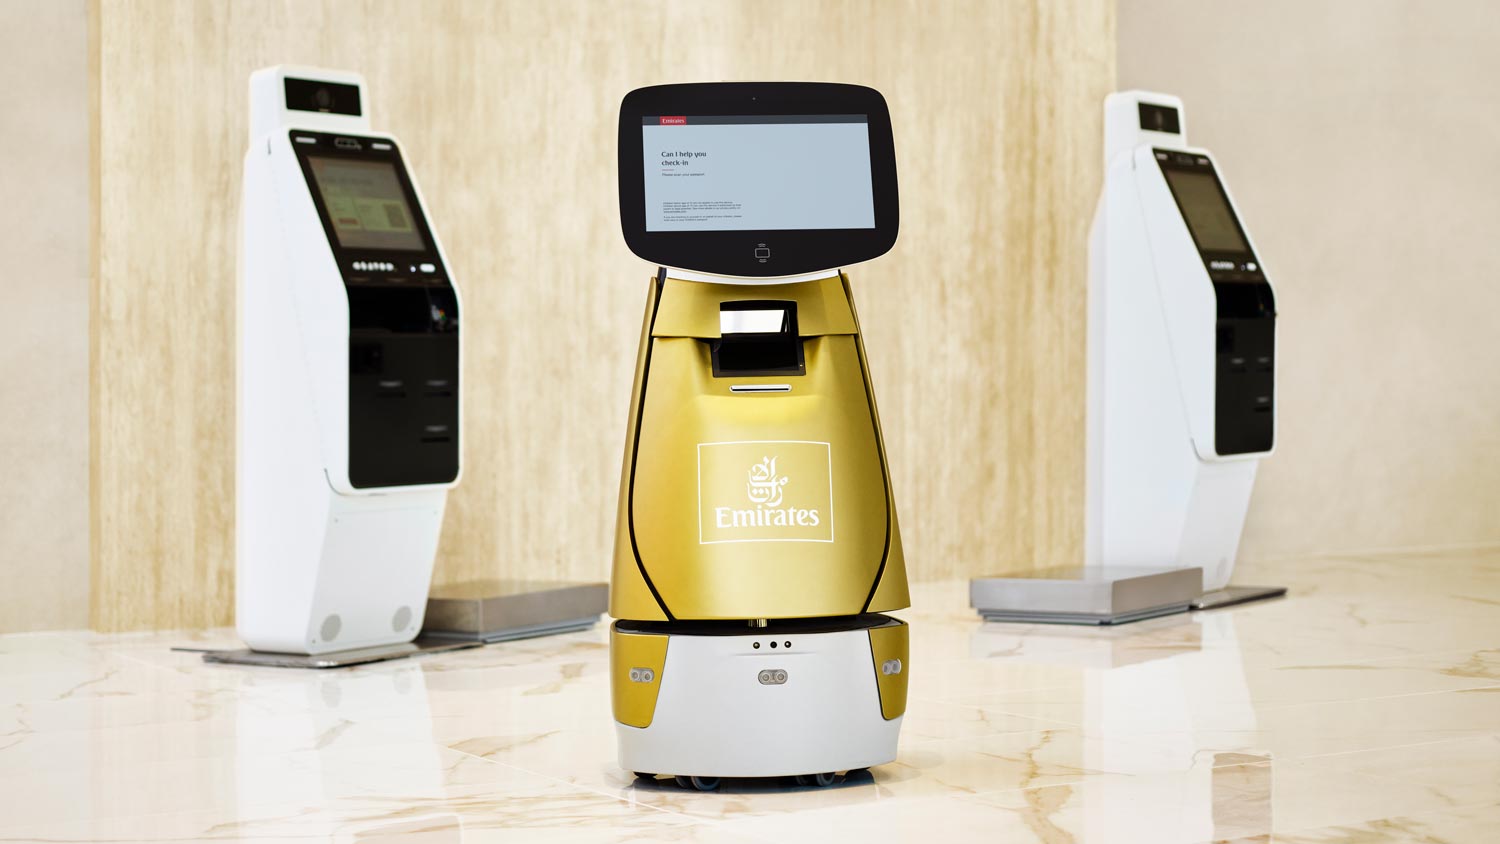 Penumpang Emirates Kini Boleh Daftar Masuk Menggunakan Robot Swapandu